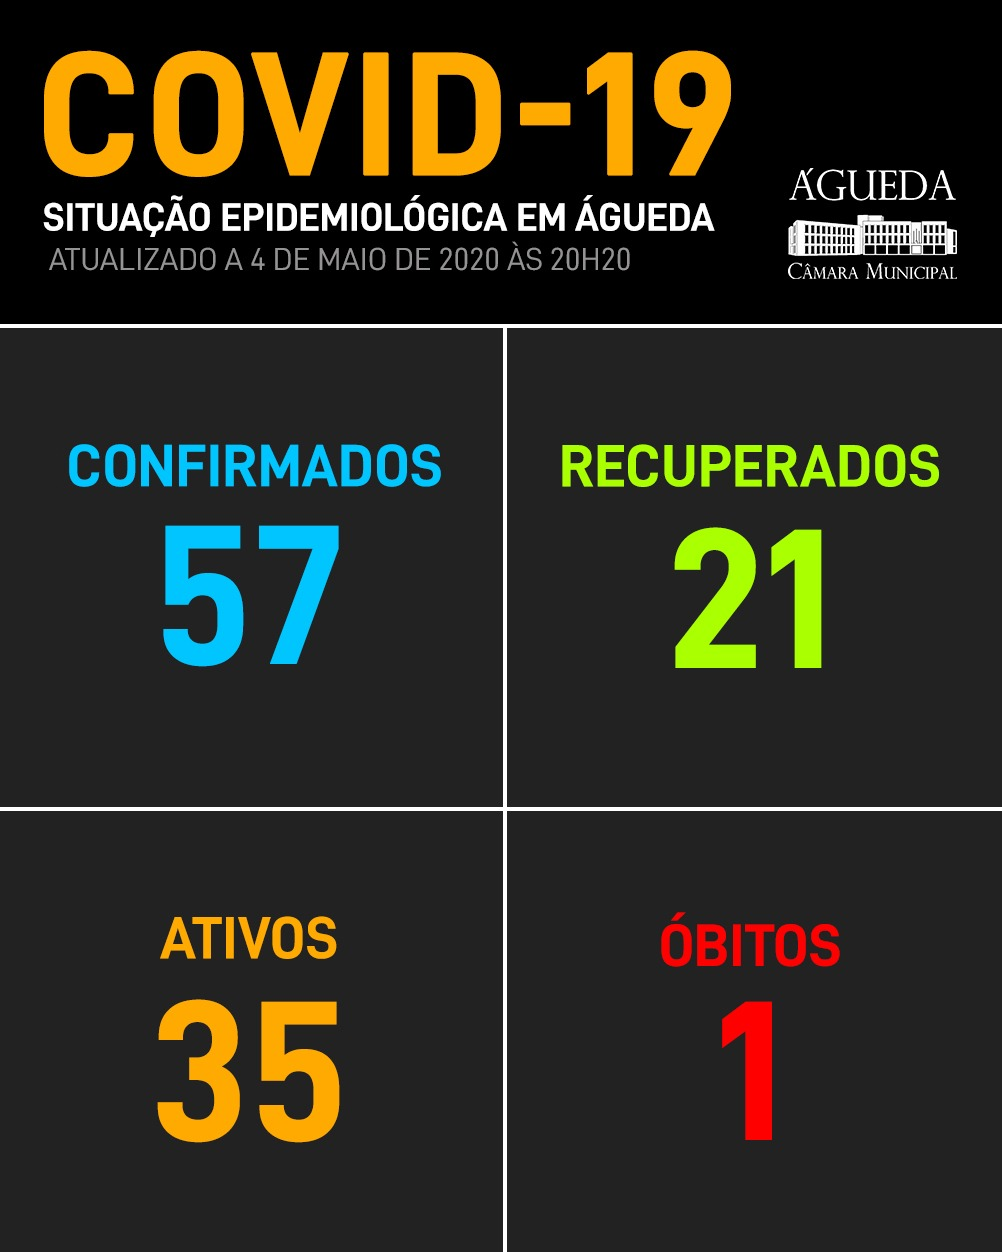 COVID-19: Aumenta o número de recuperados em Águeda, 4 de maio, 20h50